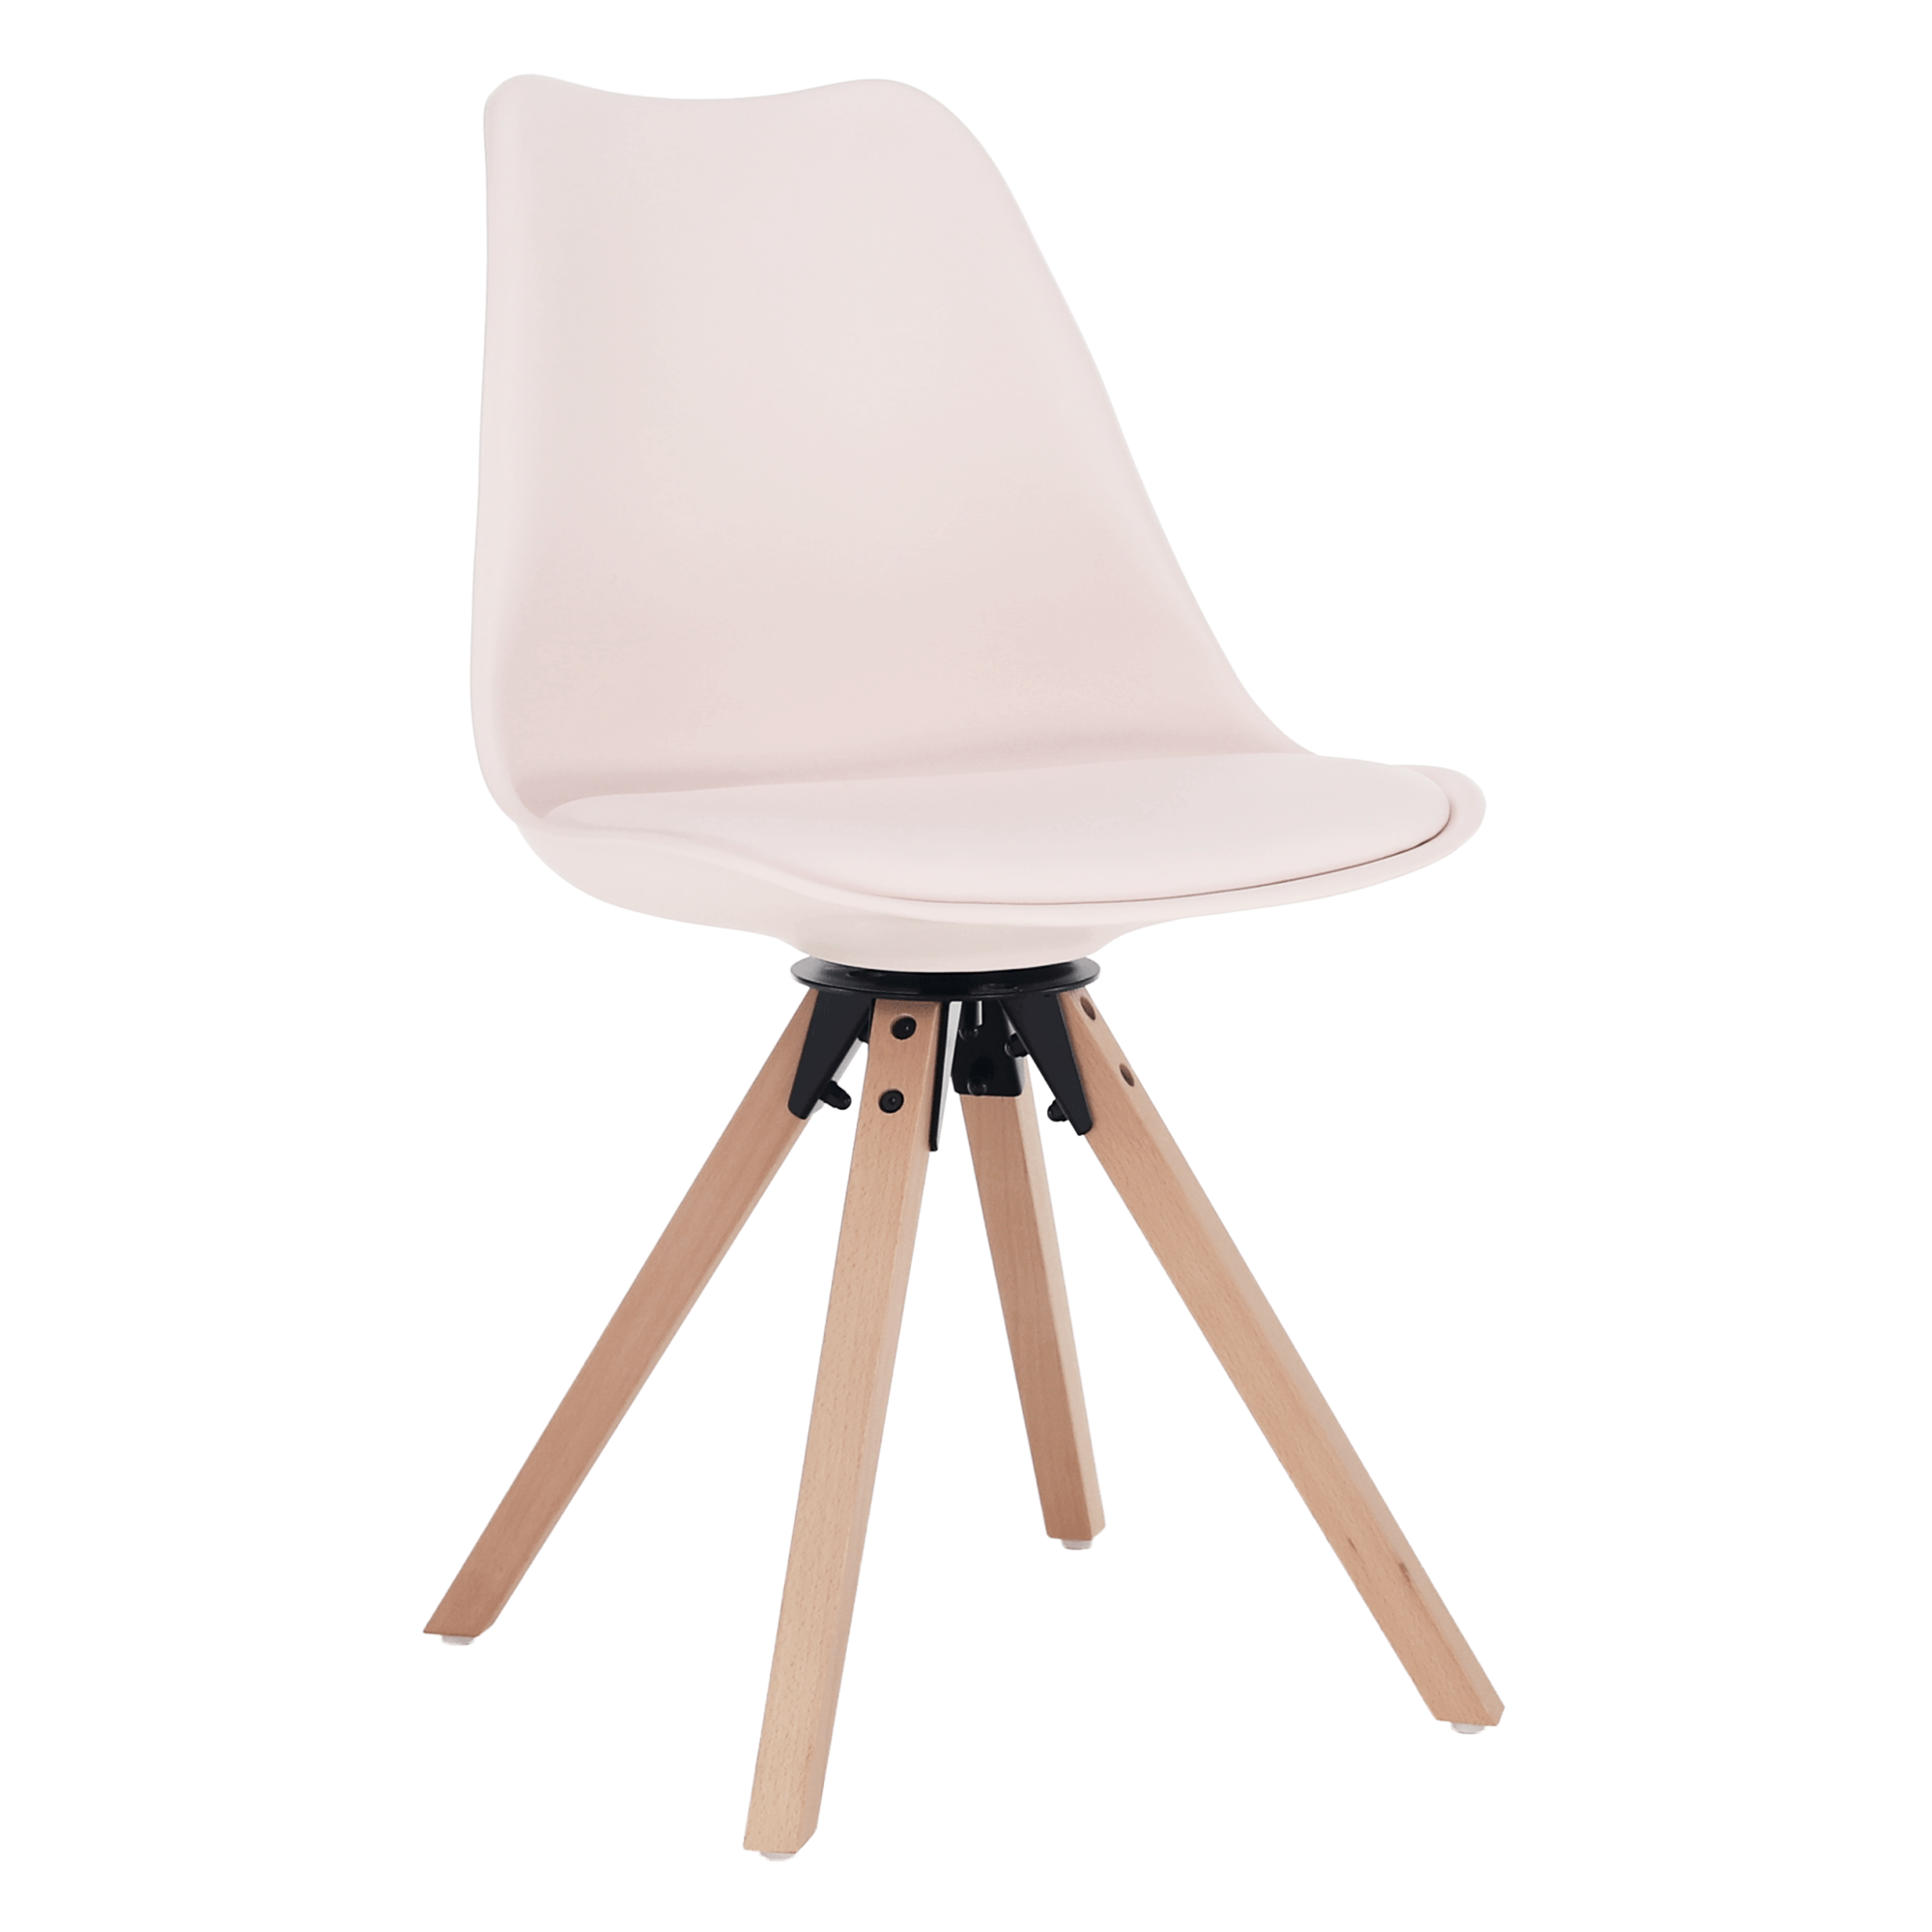 Stylová otočná židle ETOSA plast a ekokůže perlová, nohy buk